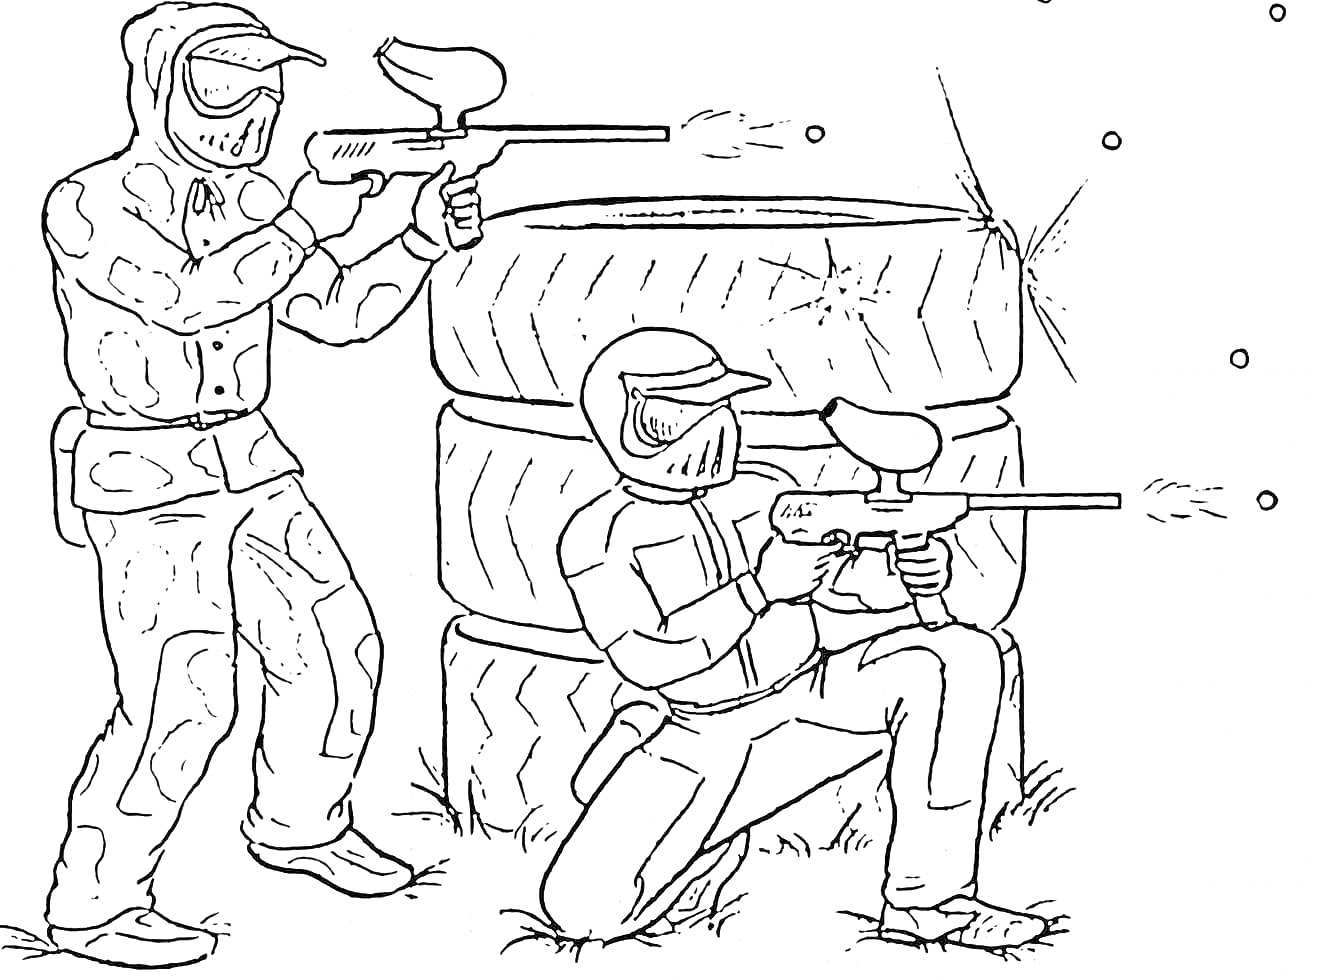 Раскраска Игра в пейнтбол - два игрока с ружьями, спрятанные за покрышками